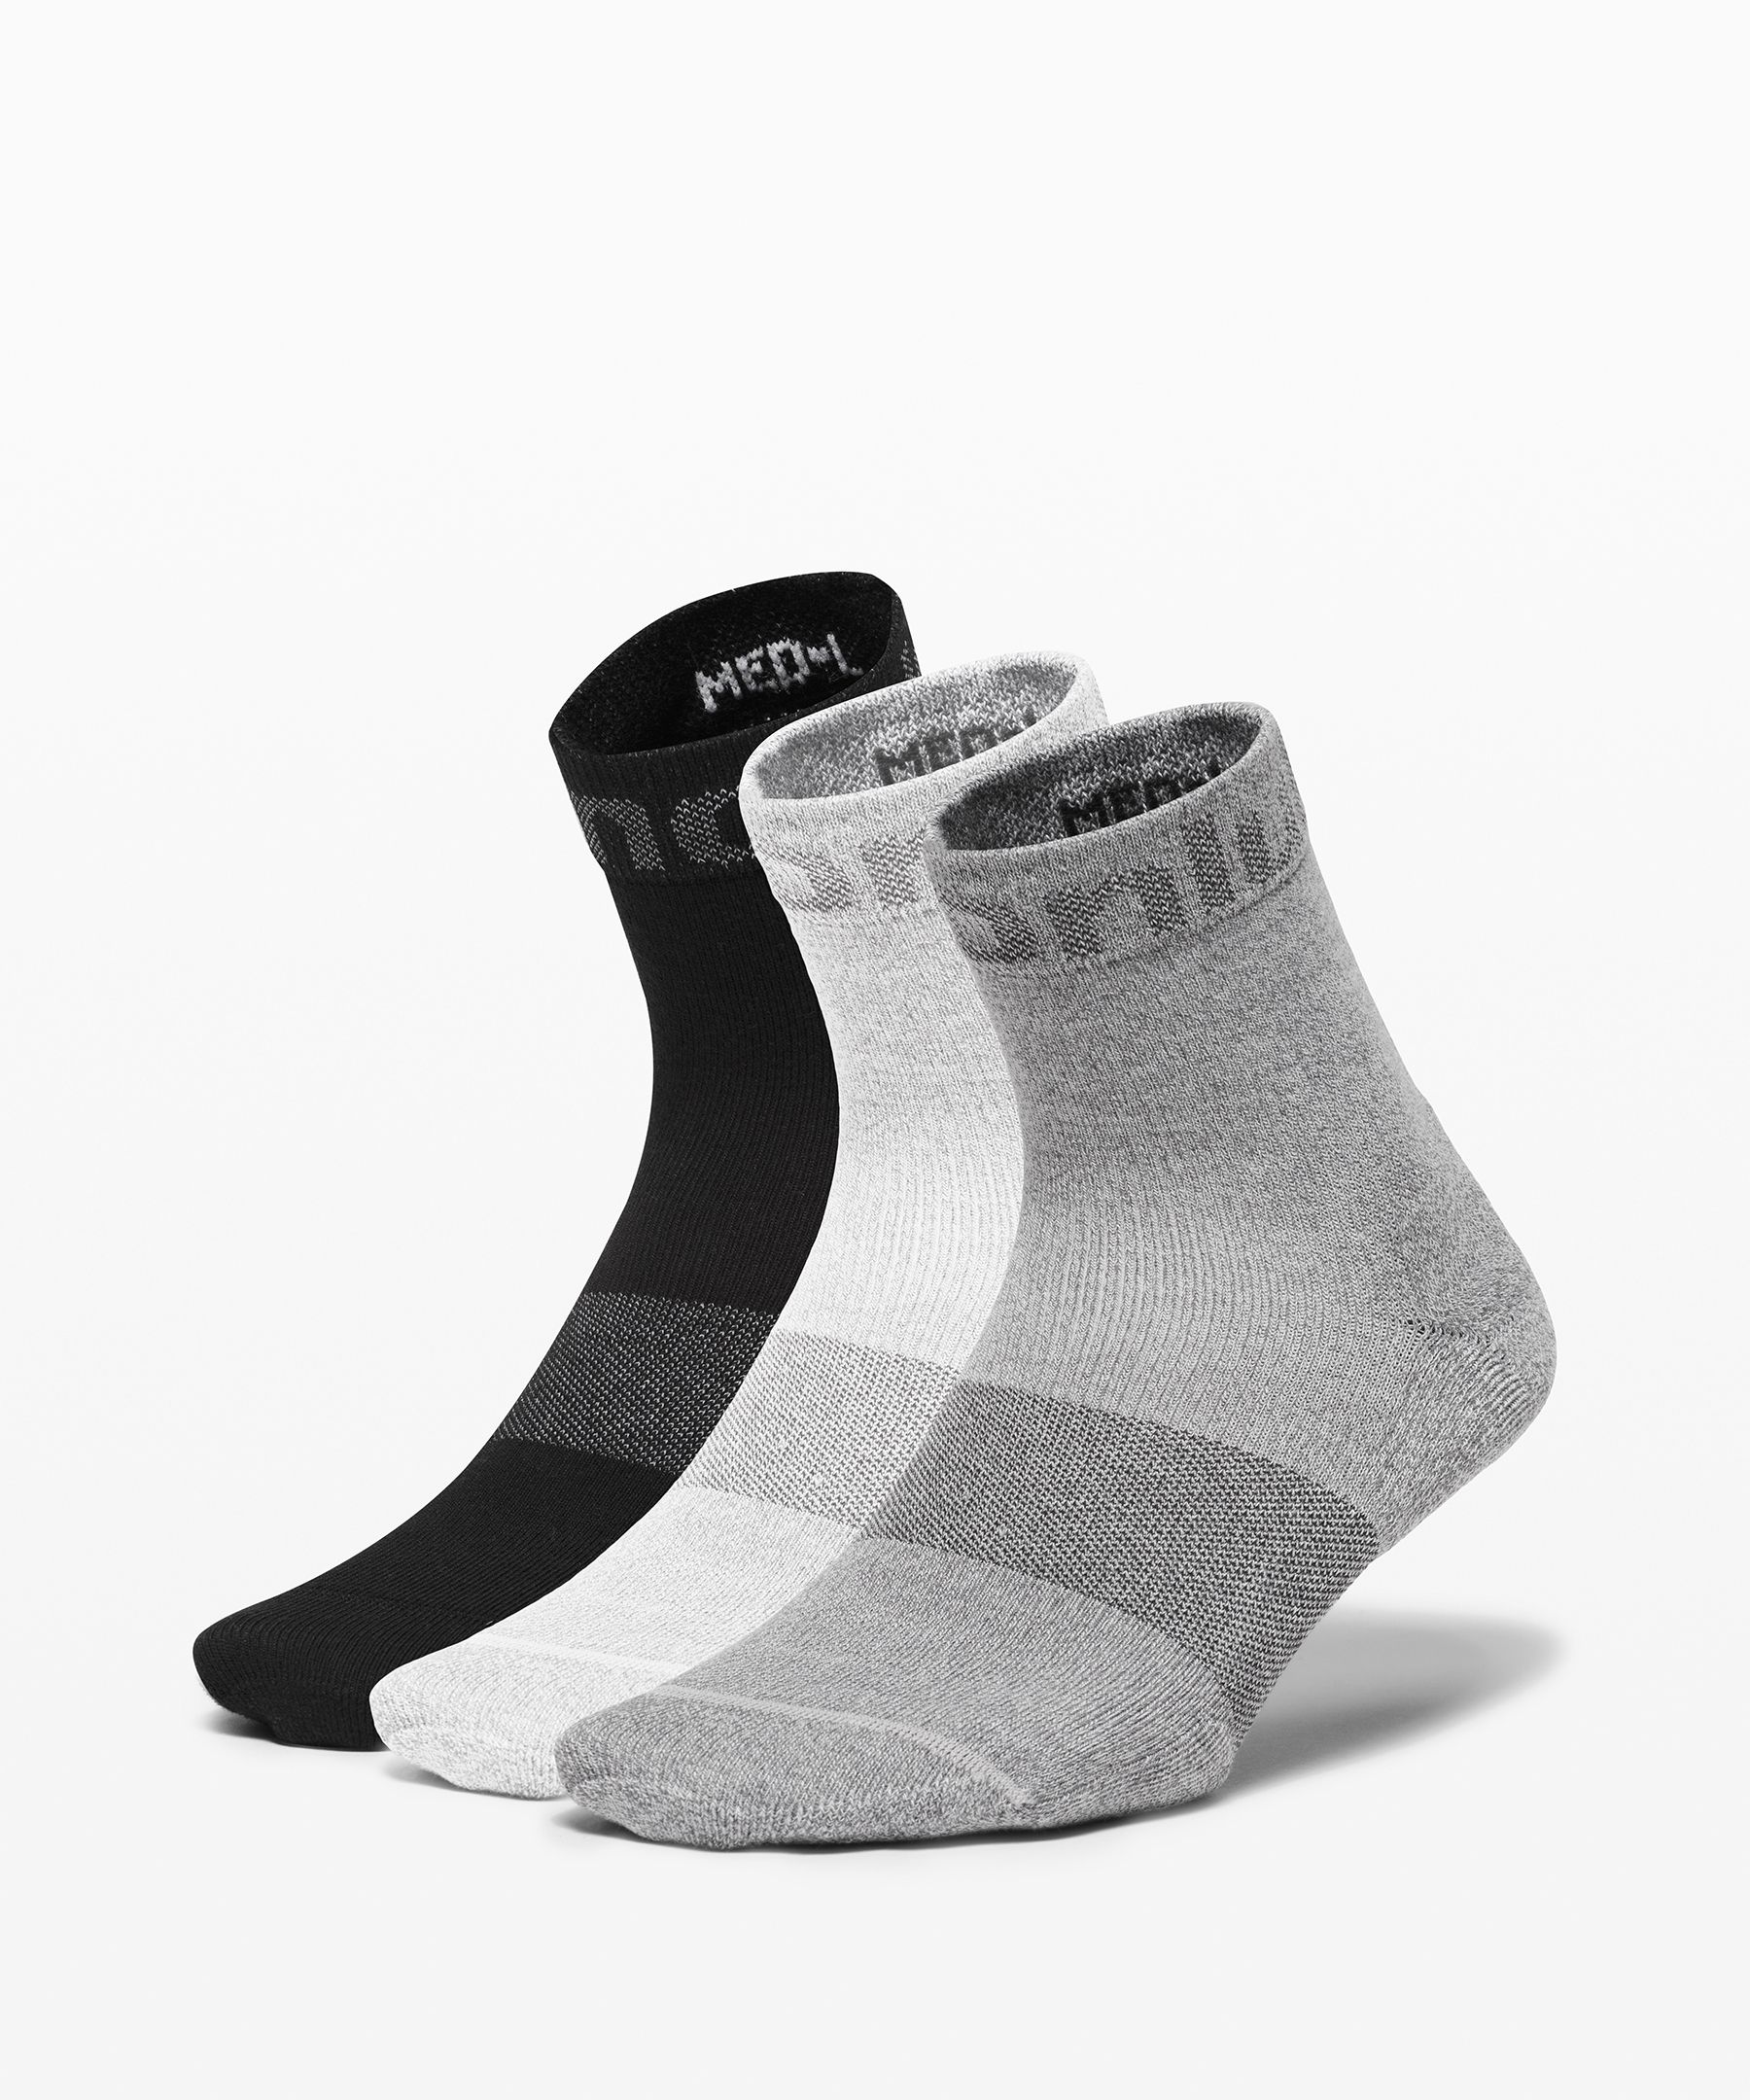 Lululemon Daily Stride Mid-crew Socks 3 Pack In Black/white/vapor